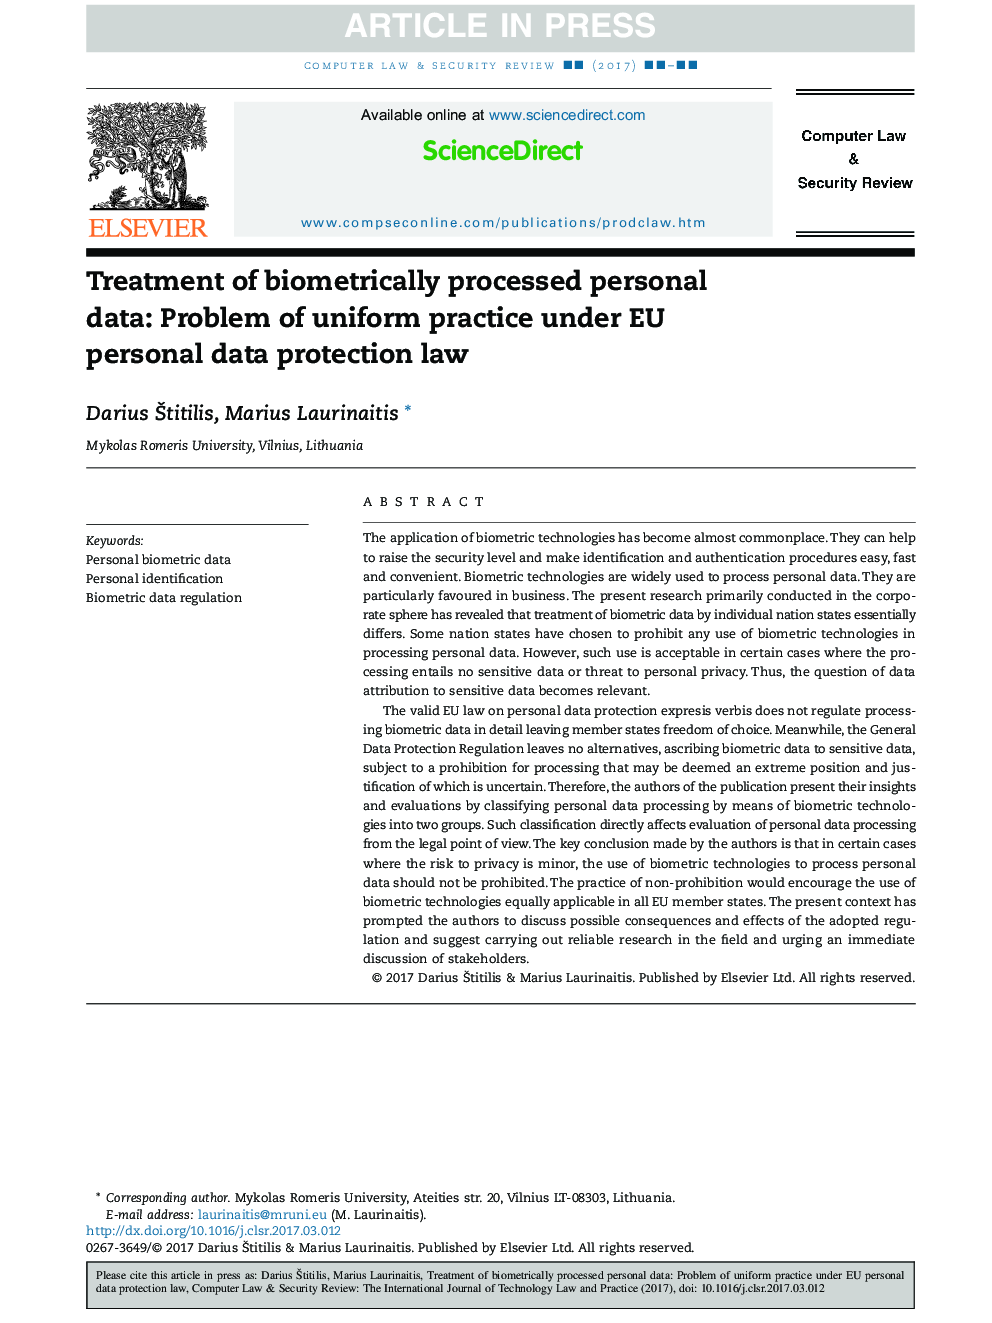 درمان اطلاعات شخصی پردازش بیومتریک: مشکل اجرای یکپارچه در قانون حفاظت از اطلاعات شخصی اتحادیه اروپا 